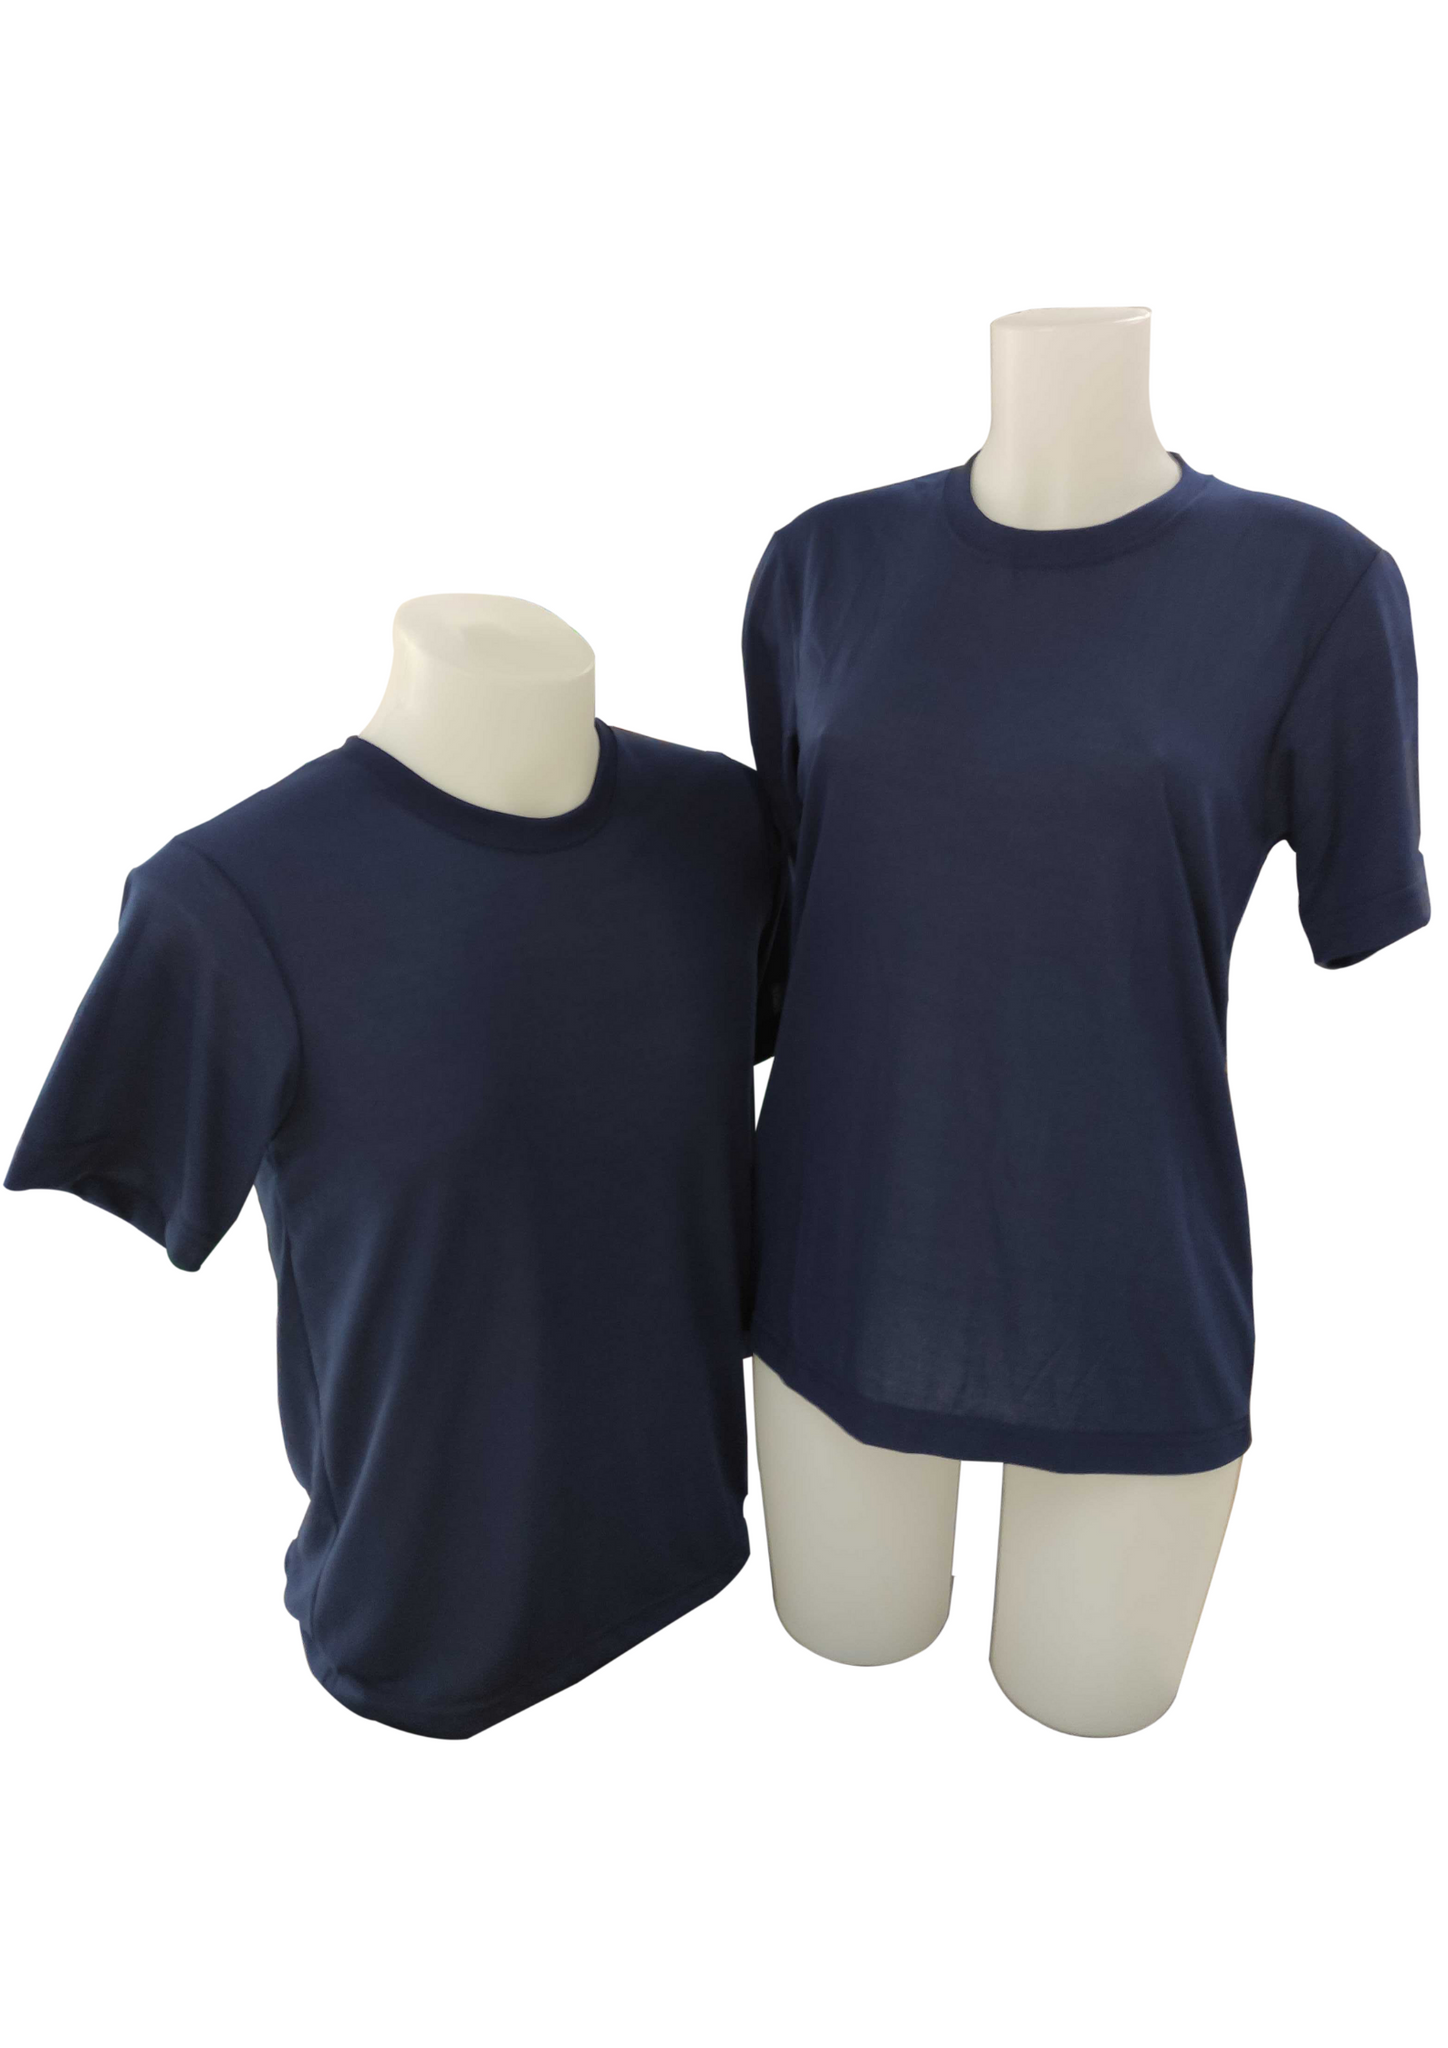 Plain T-Shirt Cotton Jersey Navy Blue